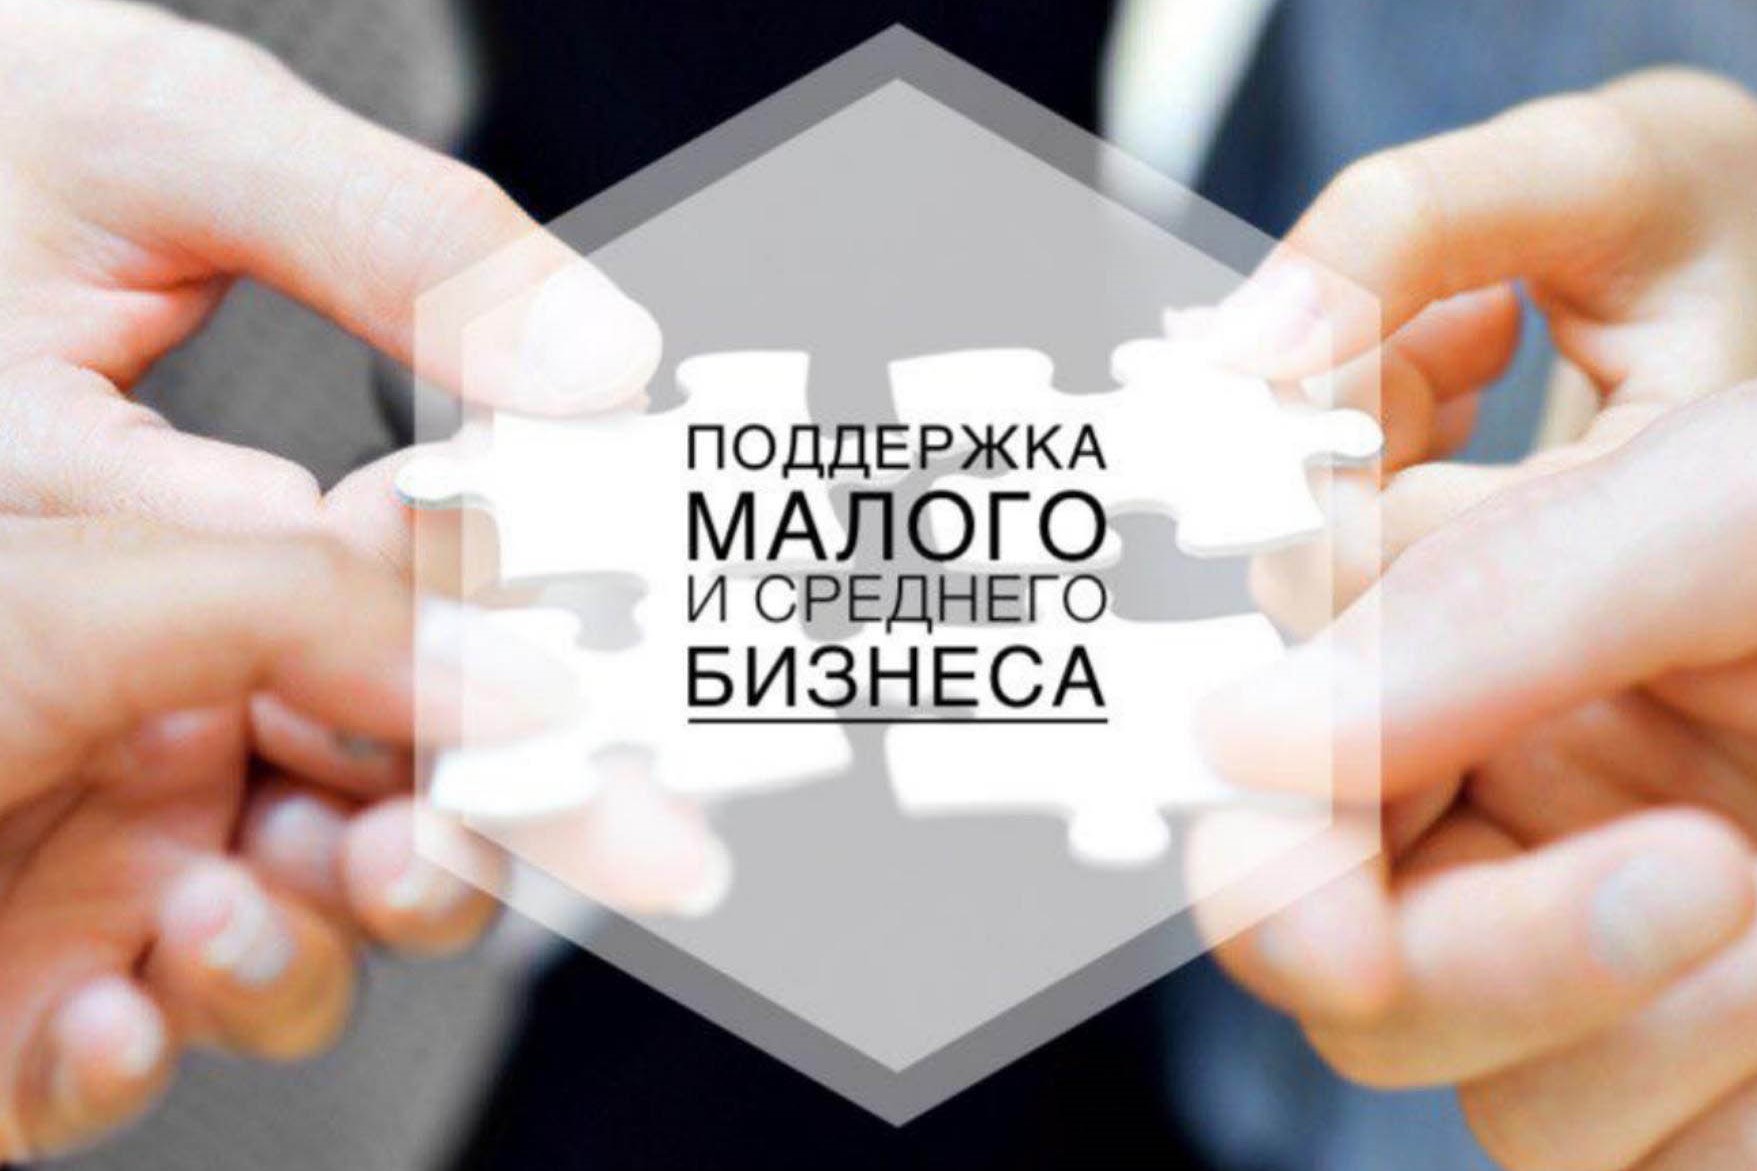 В Архангельской области принимаются меры по поддержке малого и среднего бизнеса